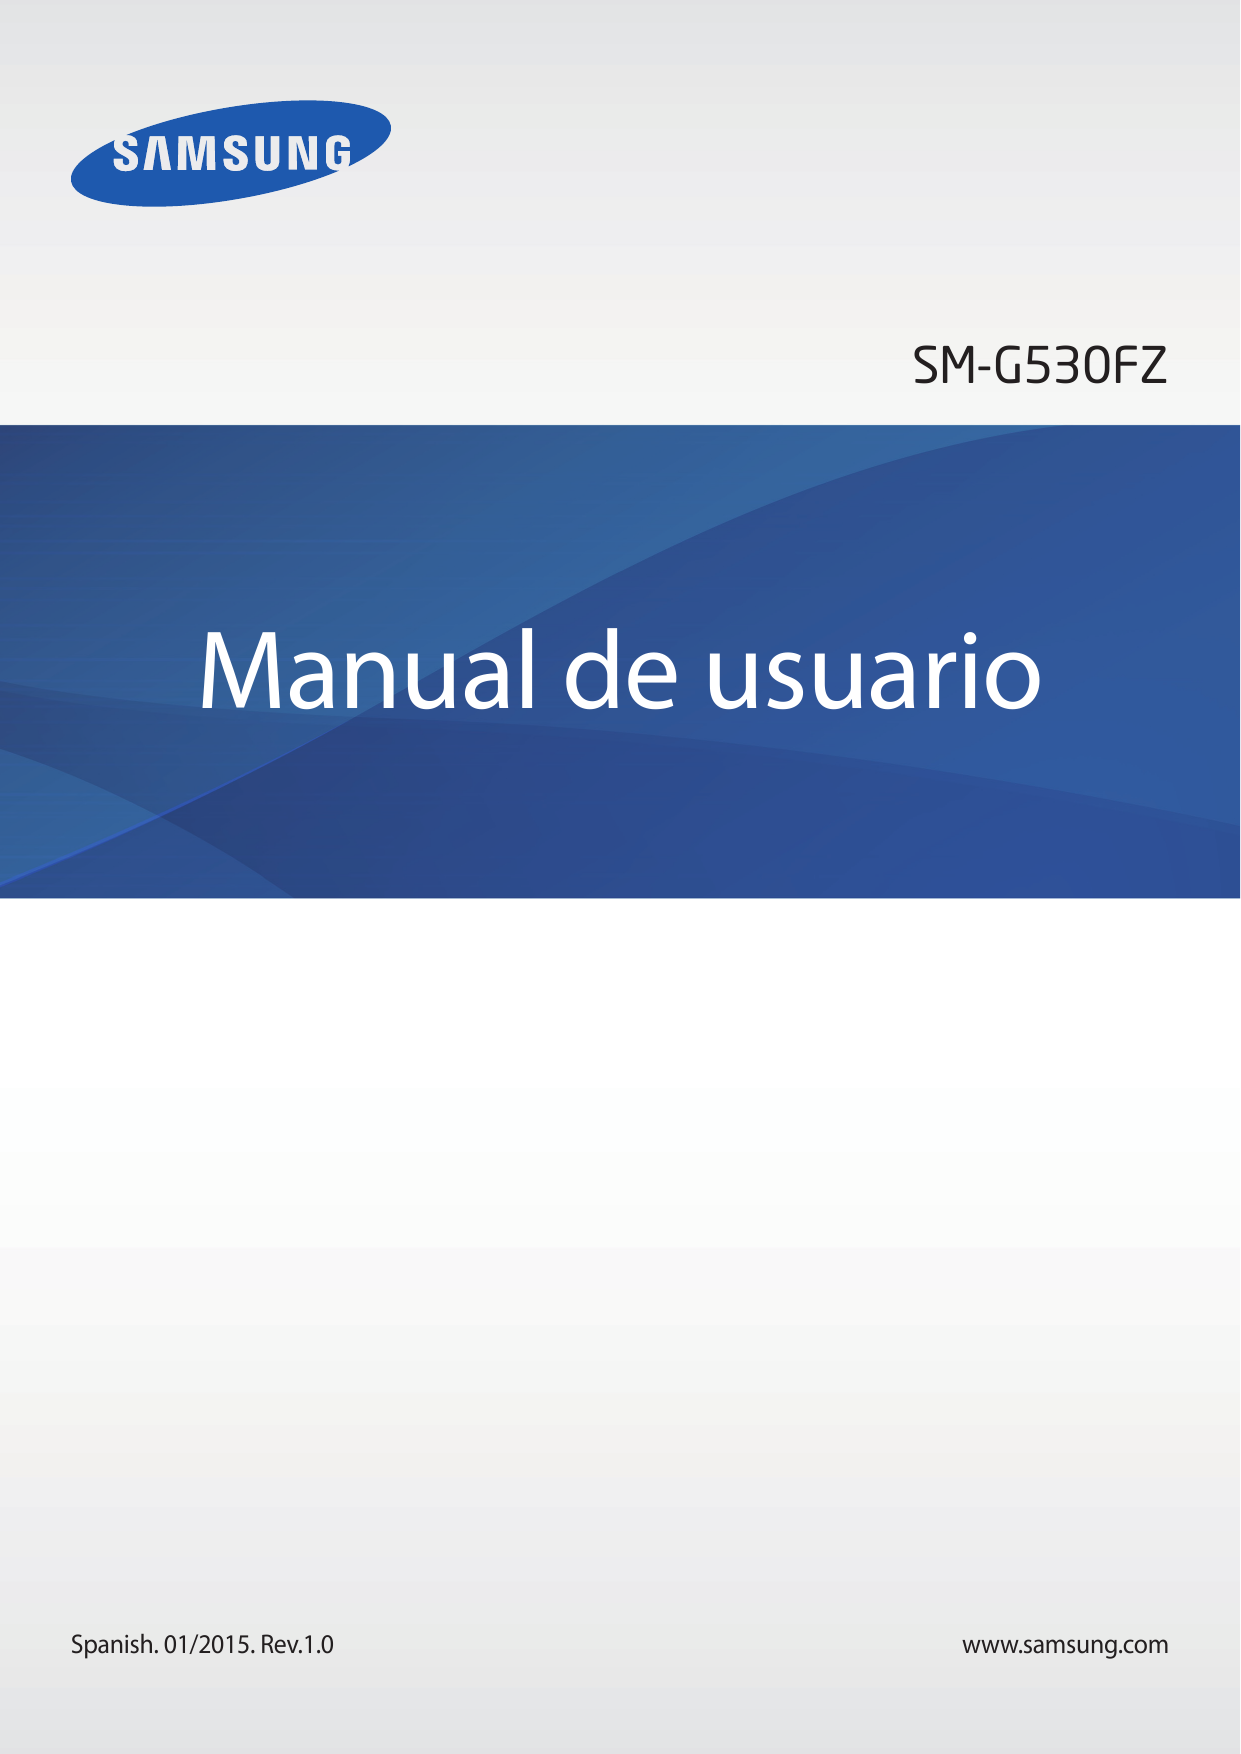 SM-G530FZManual de usuarioSpanish. 01/2015. Rev.1.0www.samsung.com